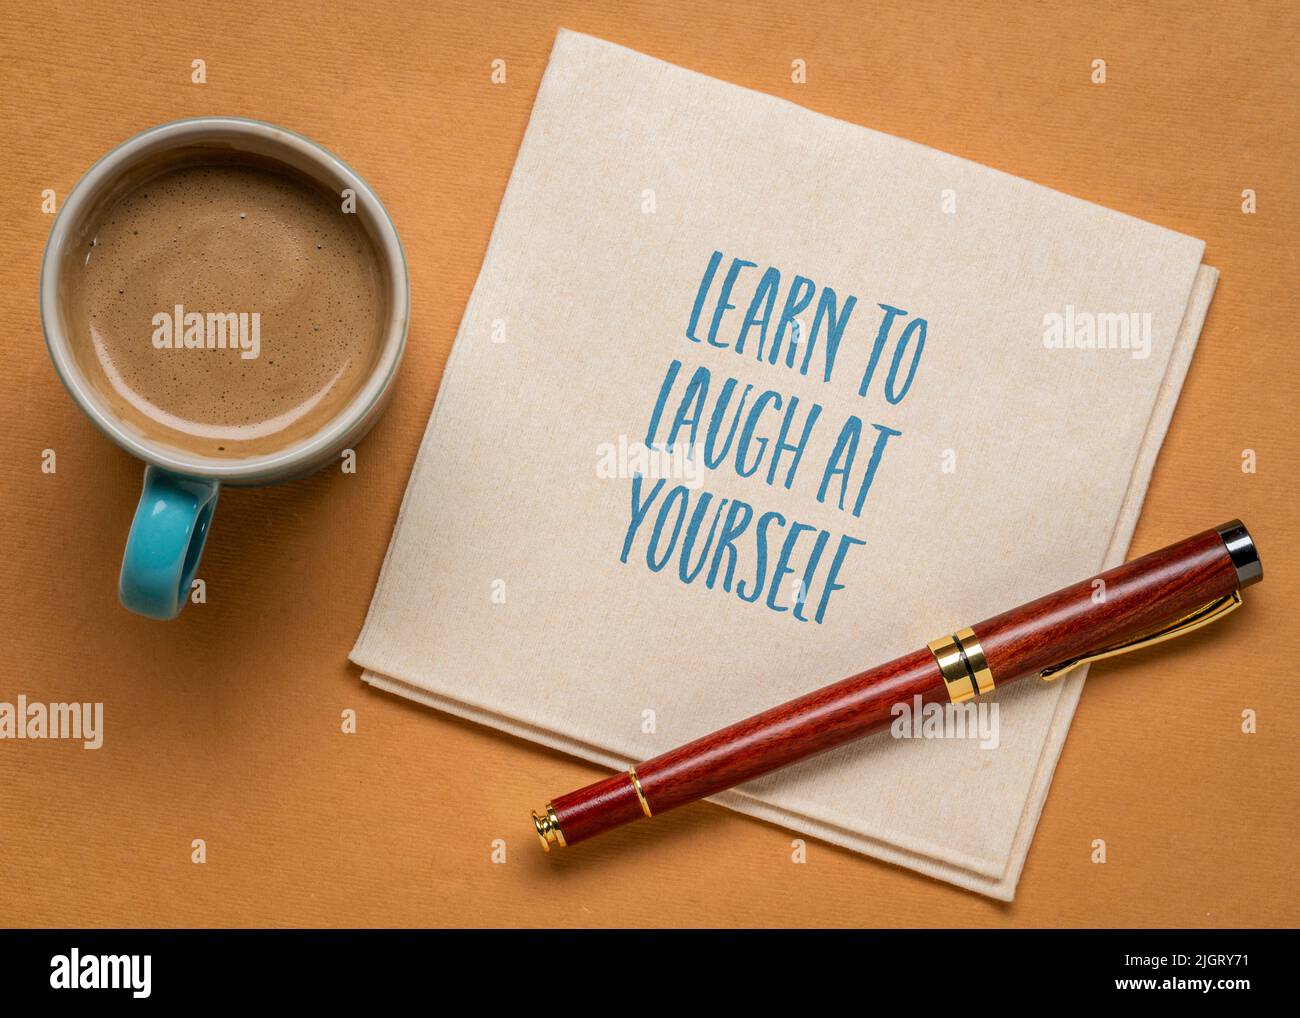 Lernen Sie, über sich selbst zu lachen inspirierende Notiz auf einer Serviette mit Kaffee, persönliches Entwicklungskonzept Stockfoto